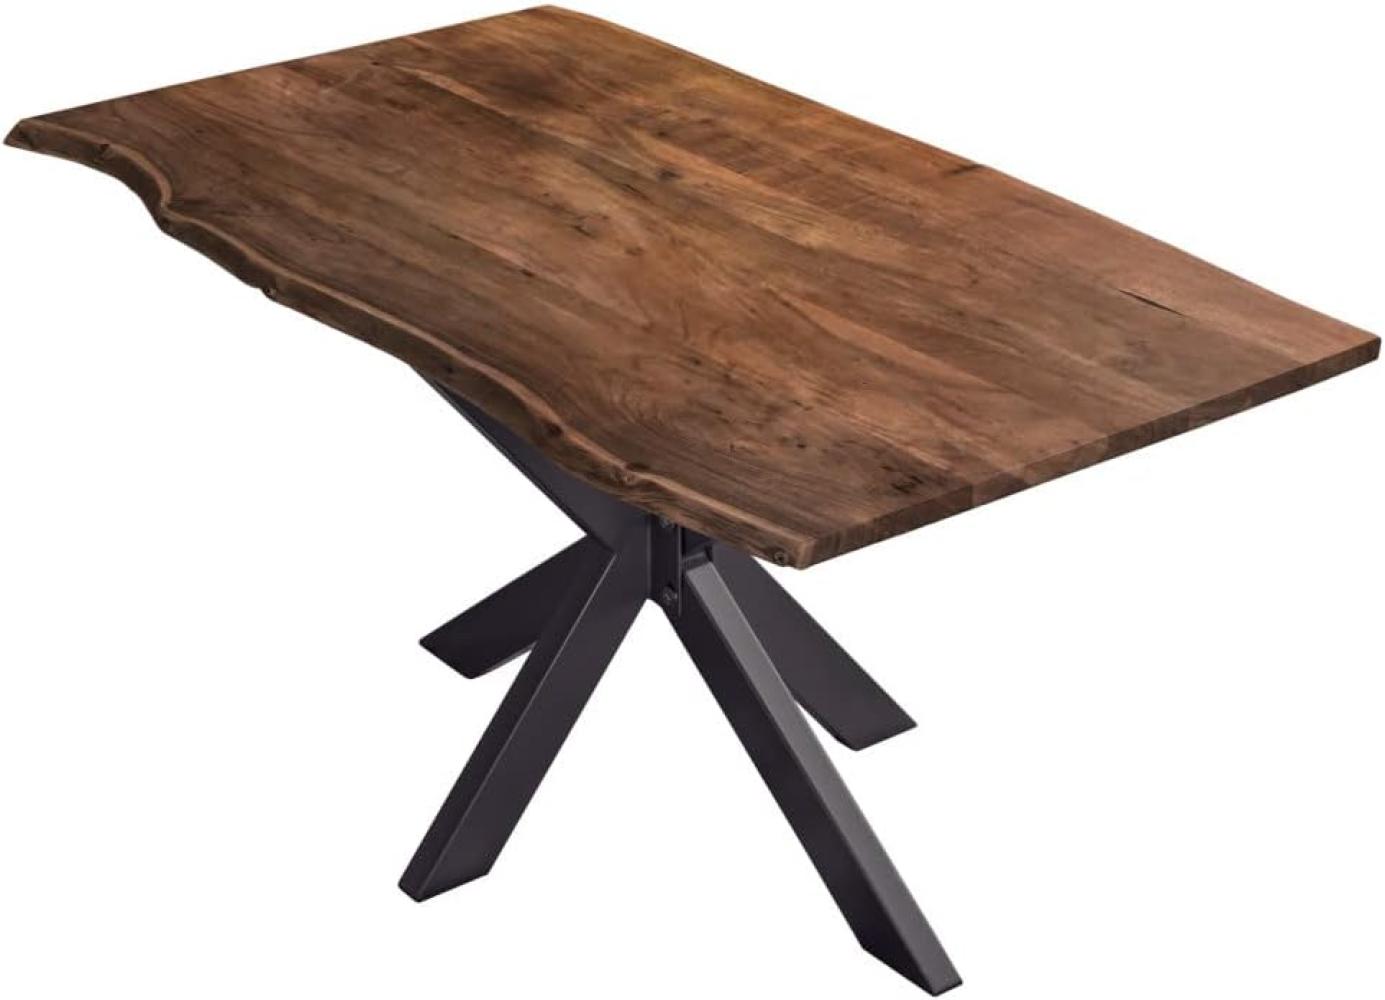 SAM Esstisch 140x80cm Benni, Akazienholz massiv + nussbaumfarben, echte Baumkante, Baumkantentisch mit Spider-Metallgestell Schwarz, Esszimmertisch mit Tischplatte 26mm Bild 1